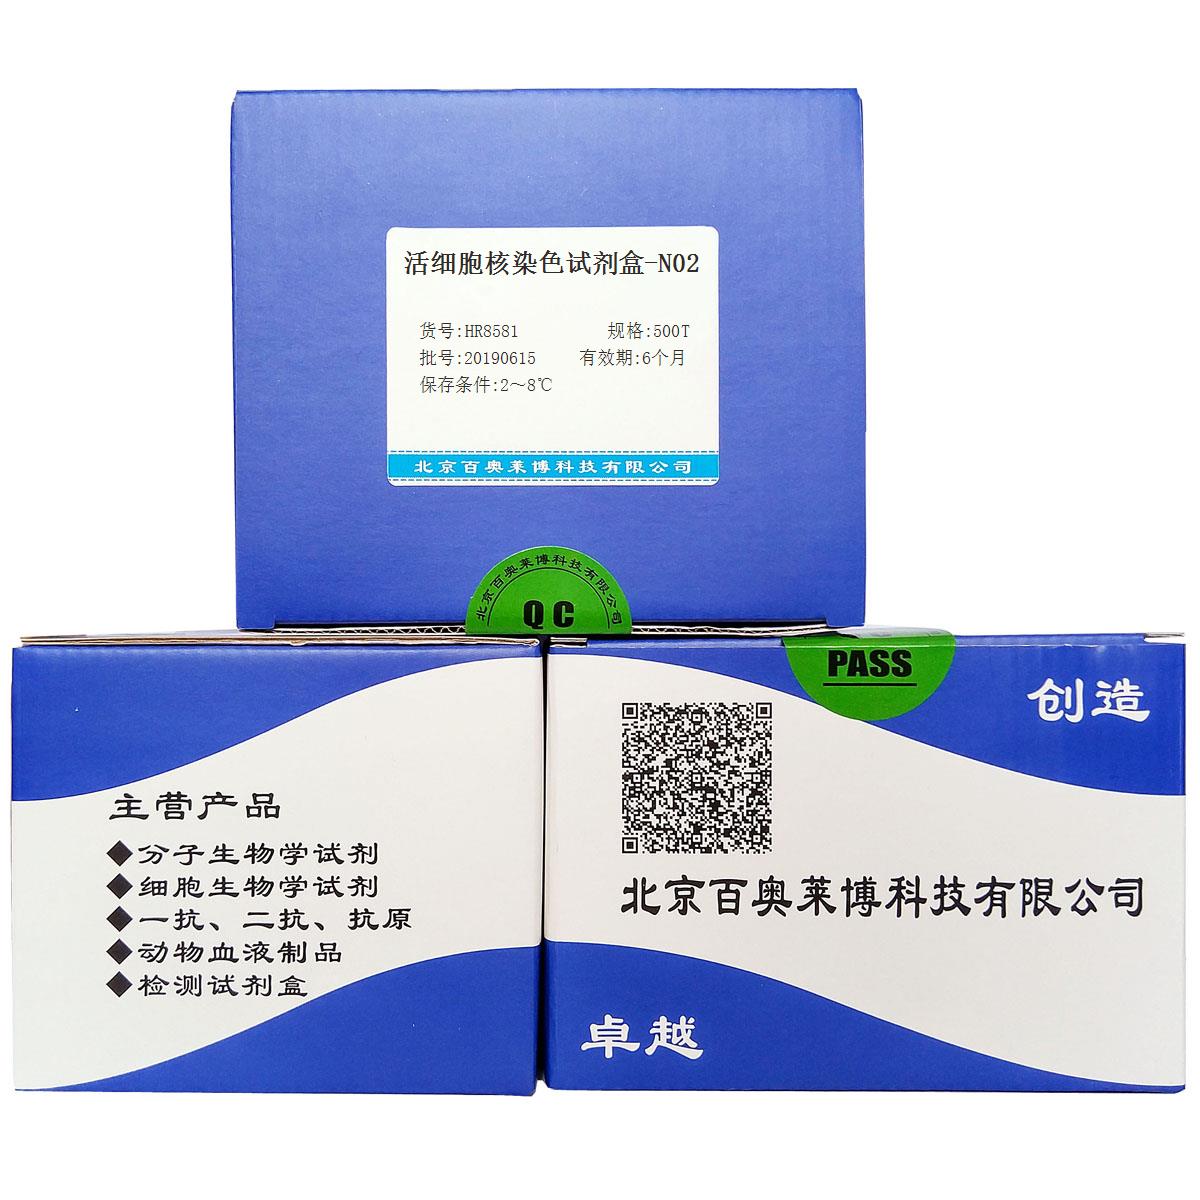 活细胞核染色试剂盒-N02北京品牌